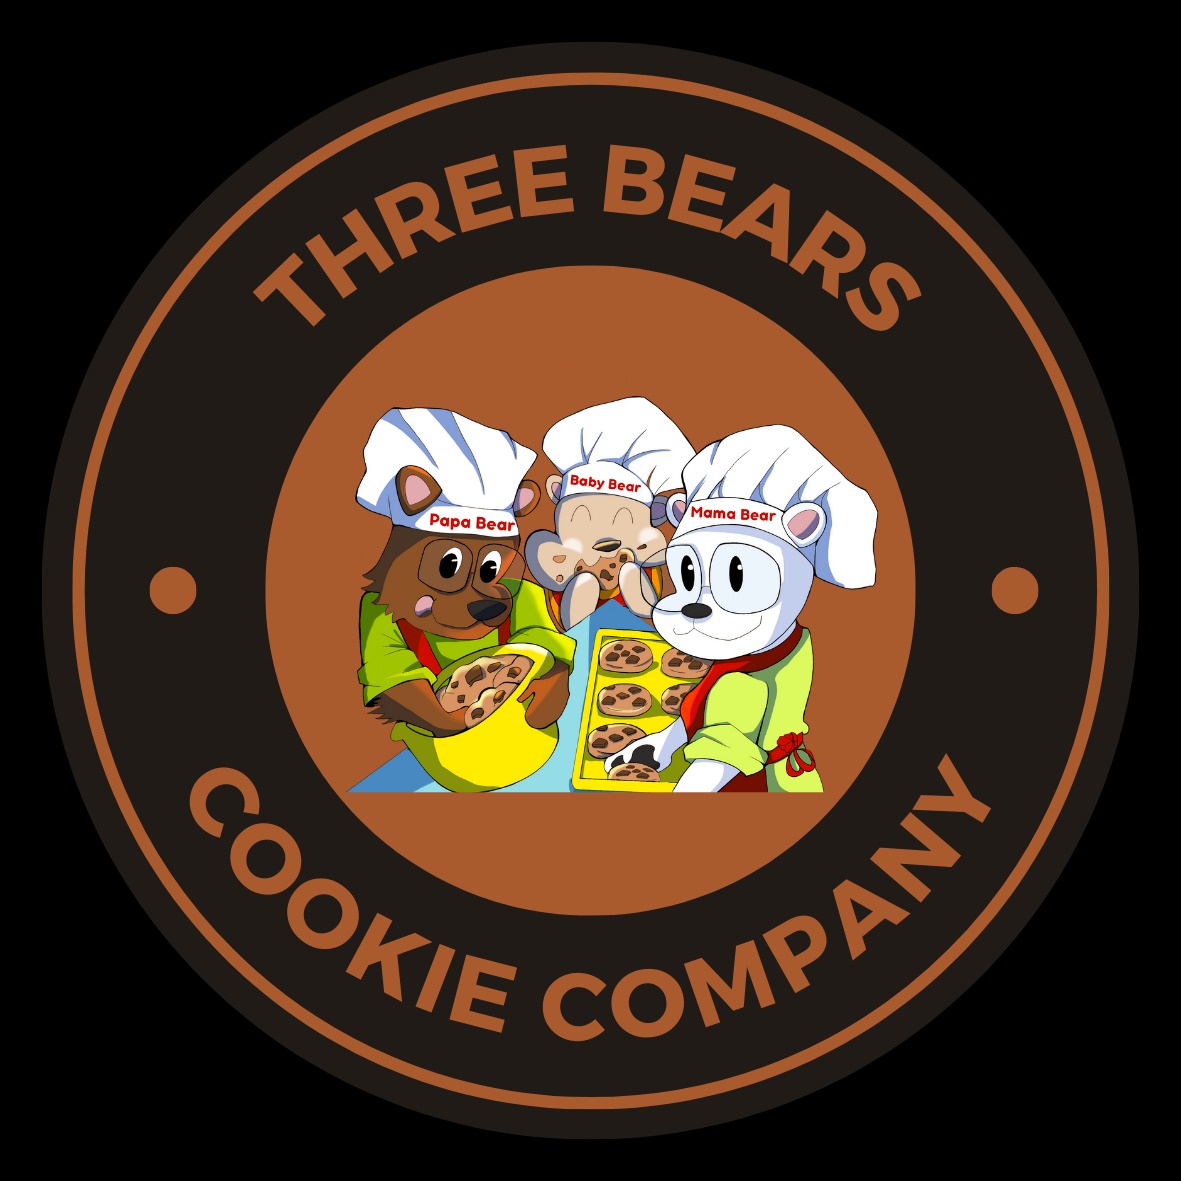 Three Bears Cookie Company